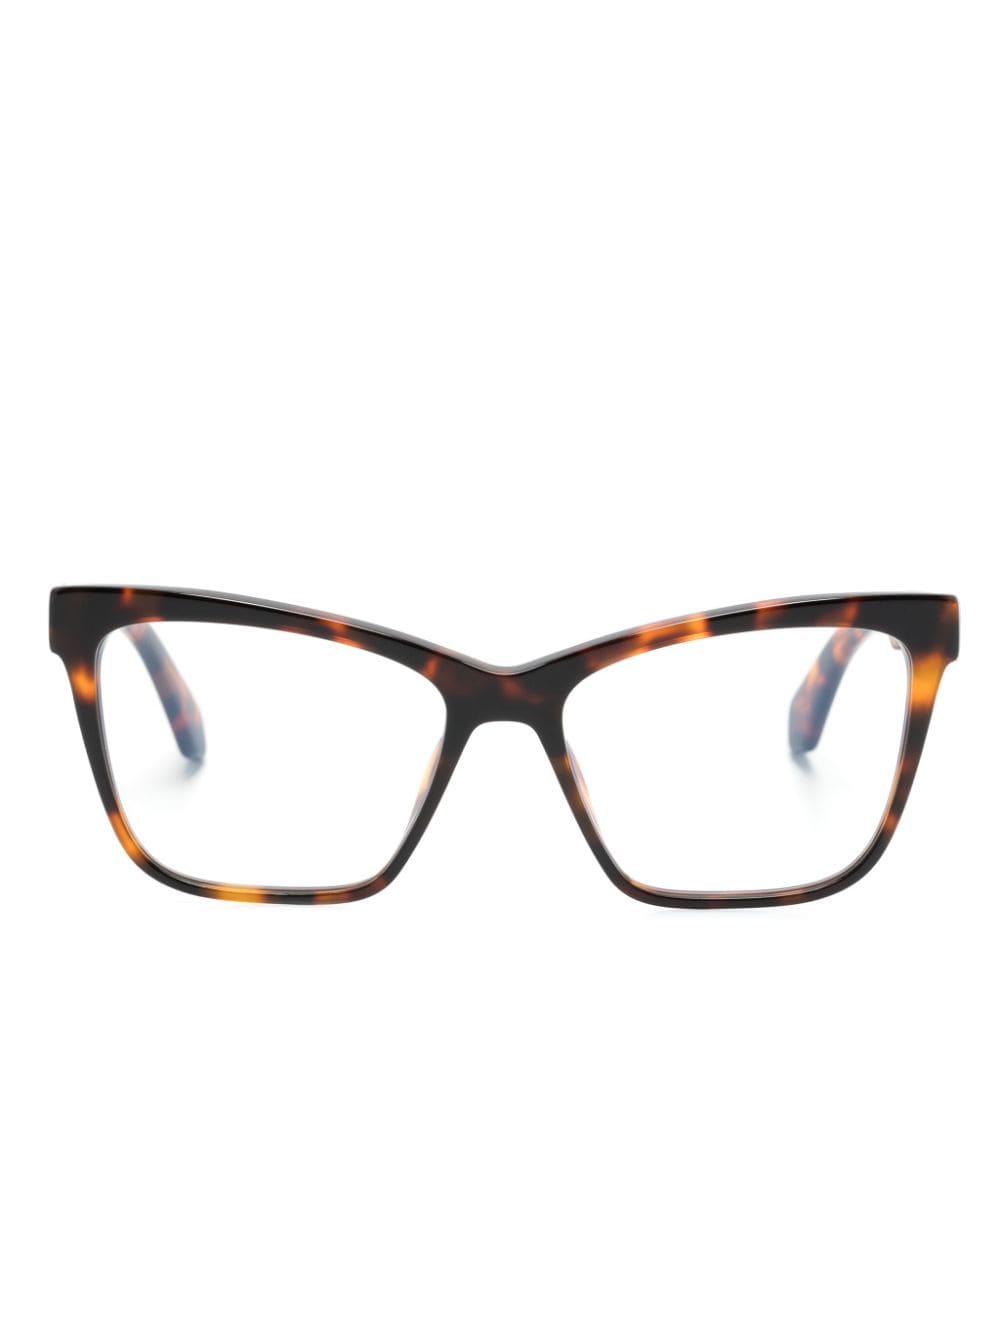 Off-White Optical Style 67 Brille im Butterfly-Design - Braun von Off-White